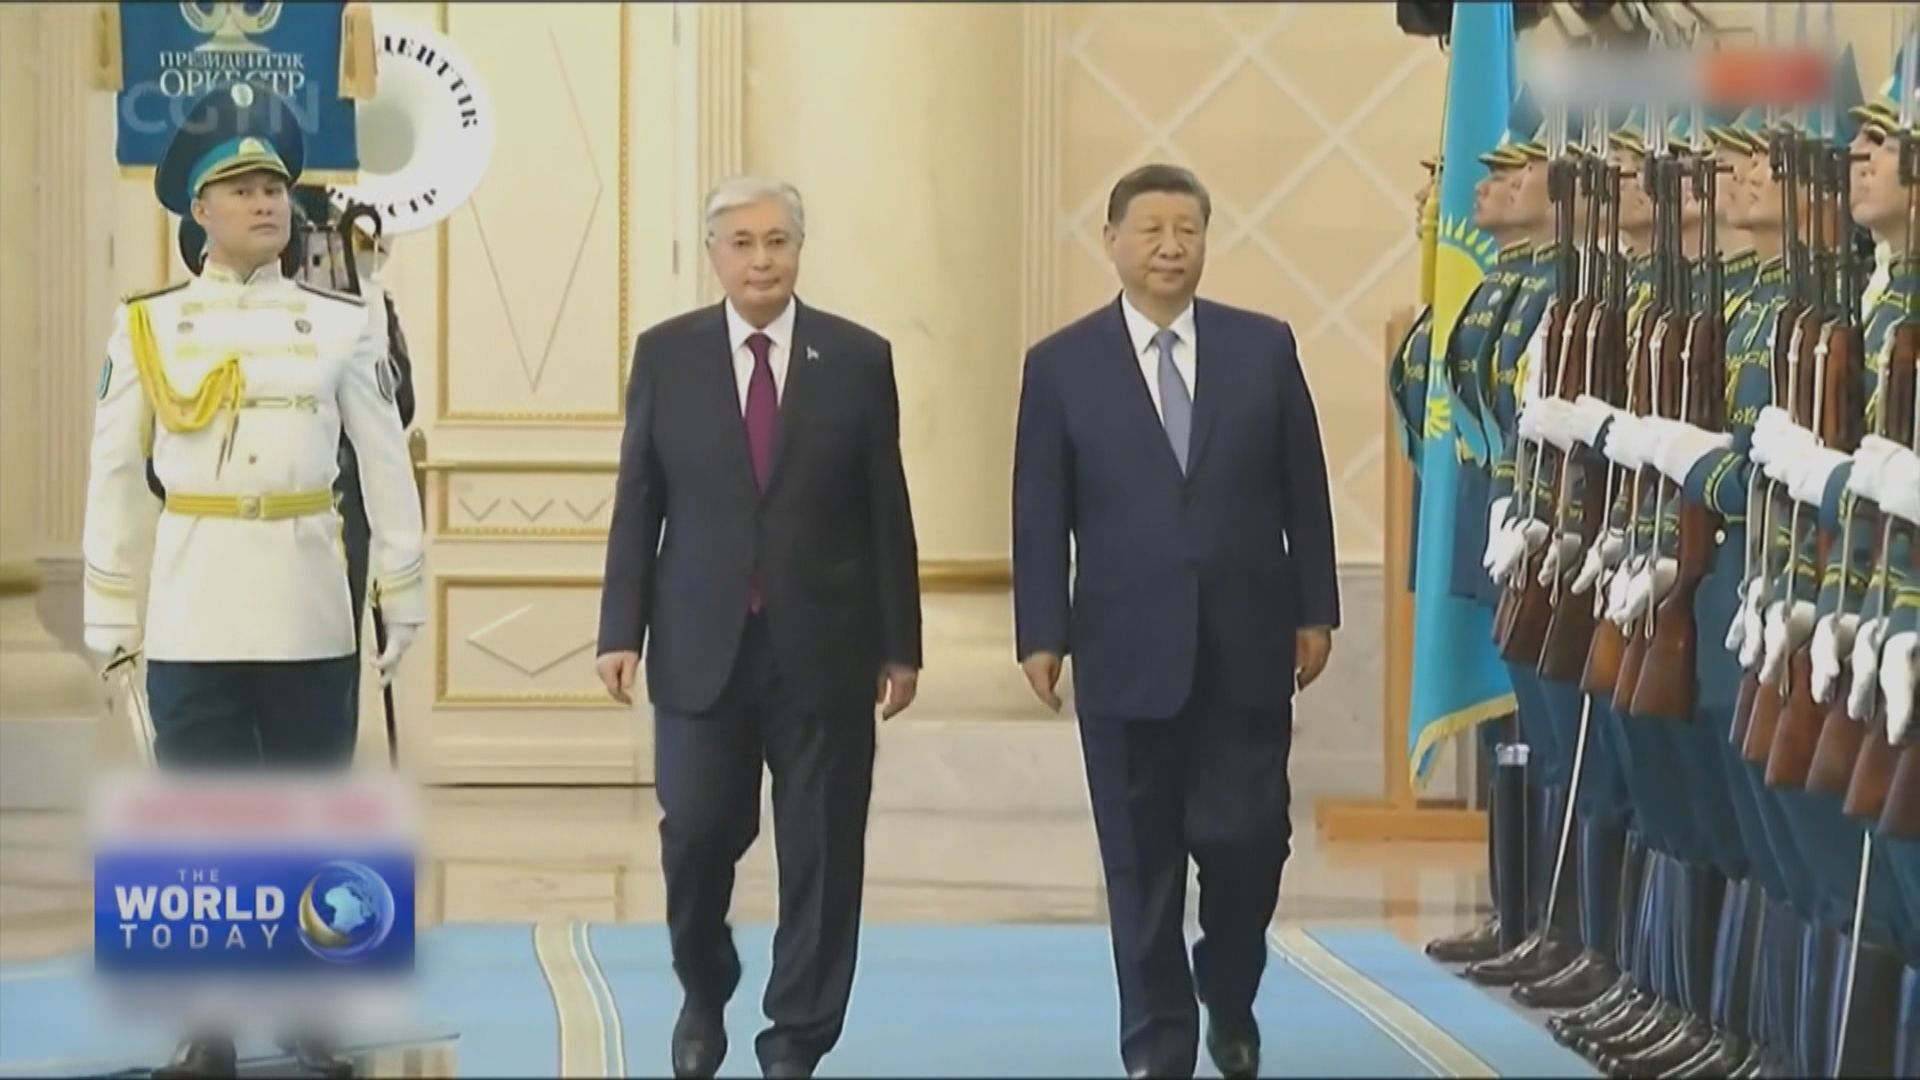 哈薩克舉行儀式歡迎習近平國事訪問